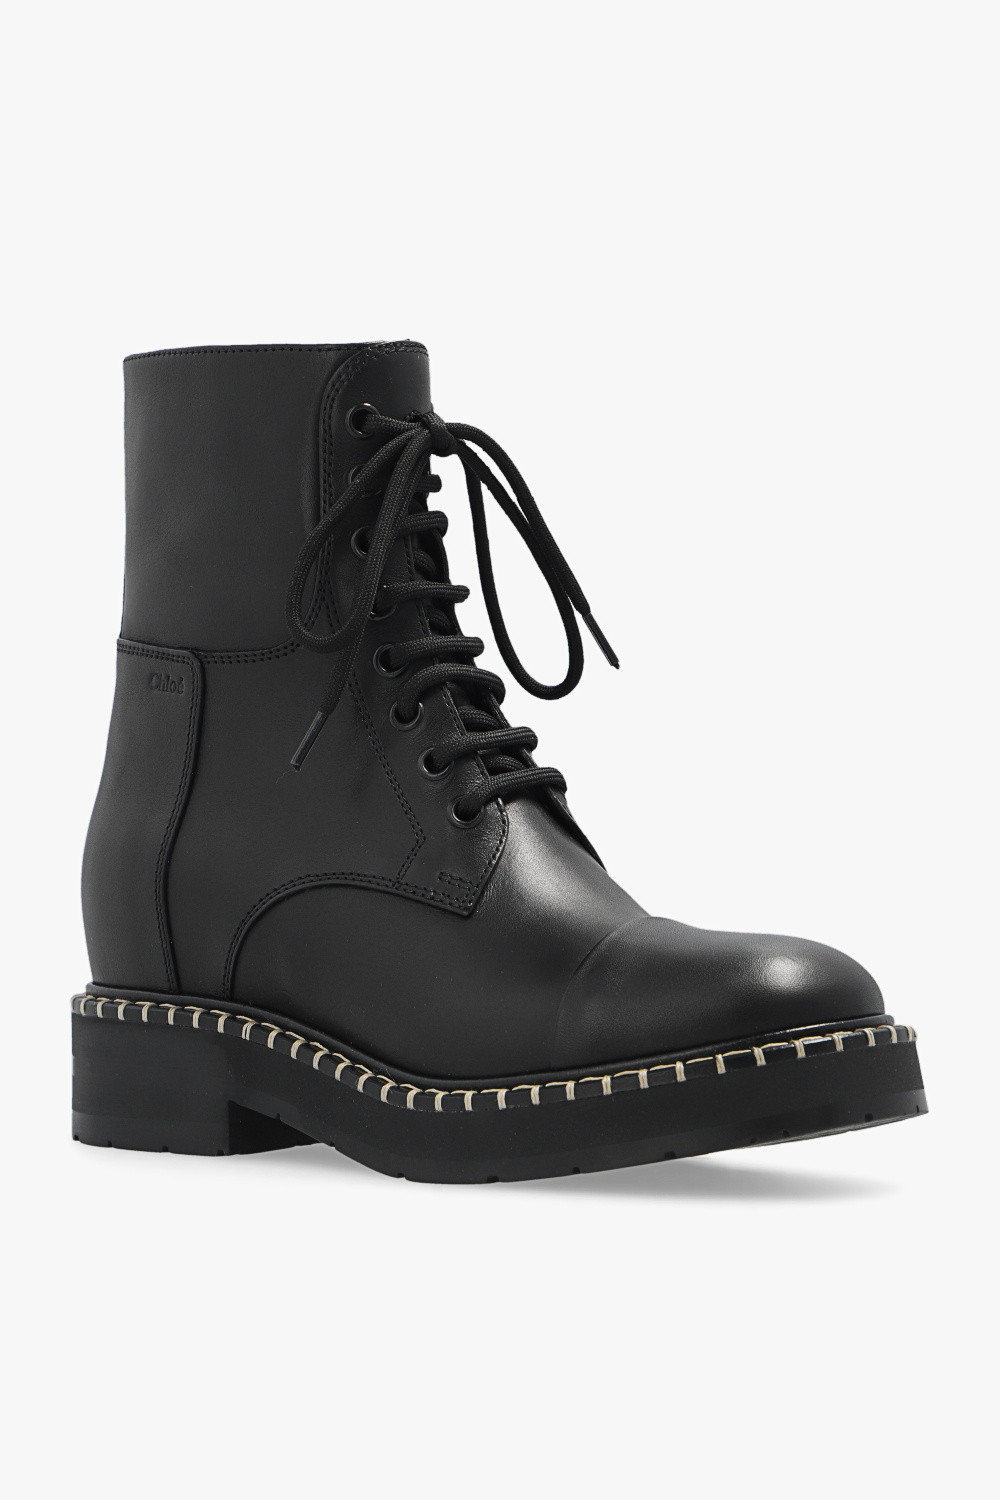 Chloé ‘Noua’ leather boots